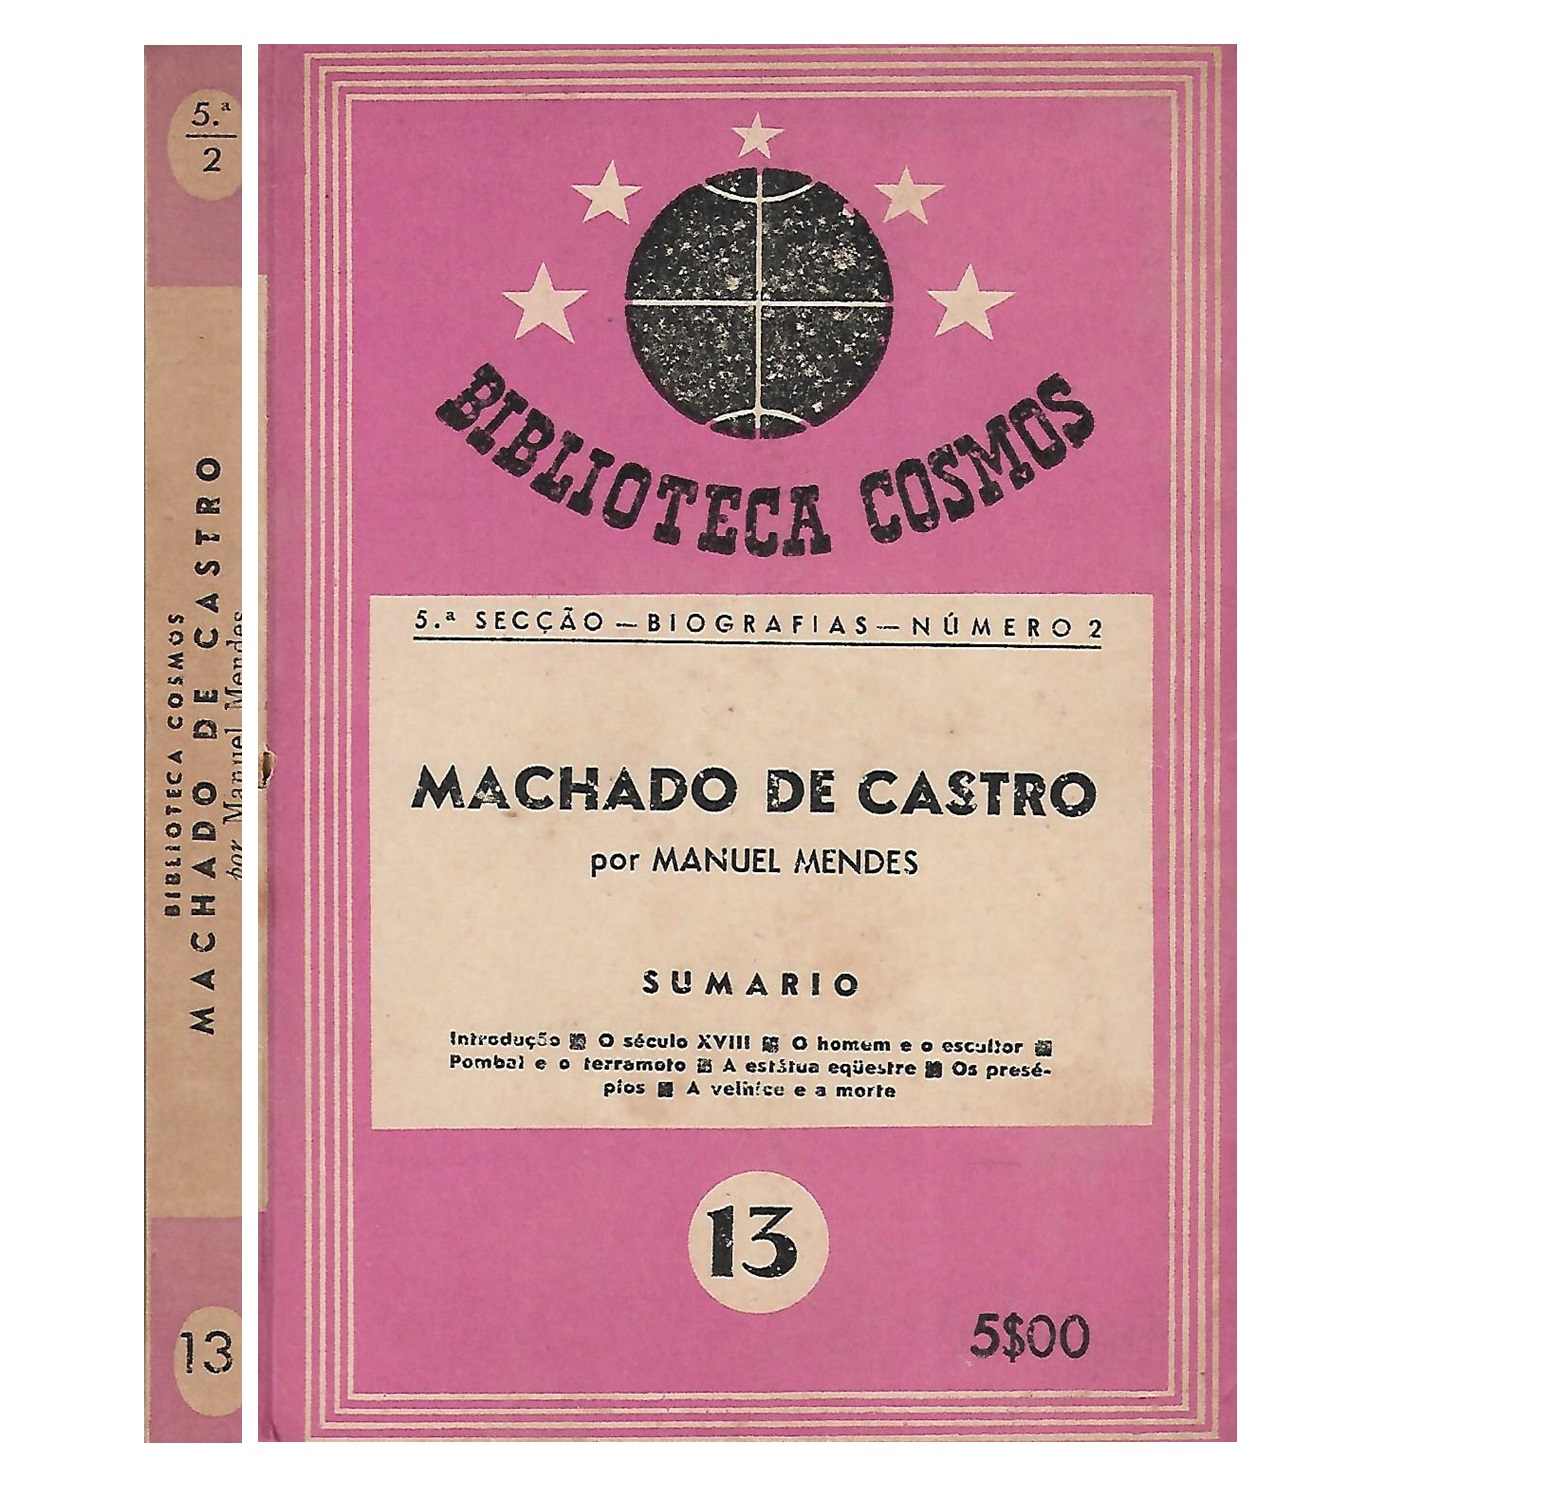  MACHADO DE CASTRO